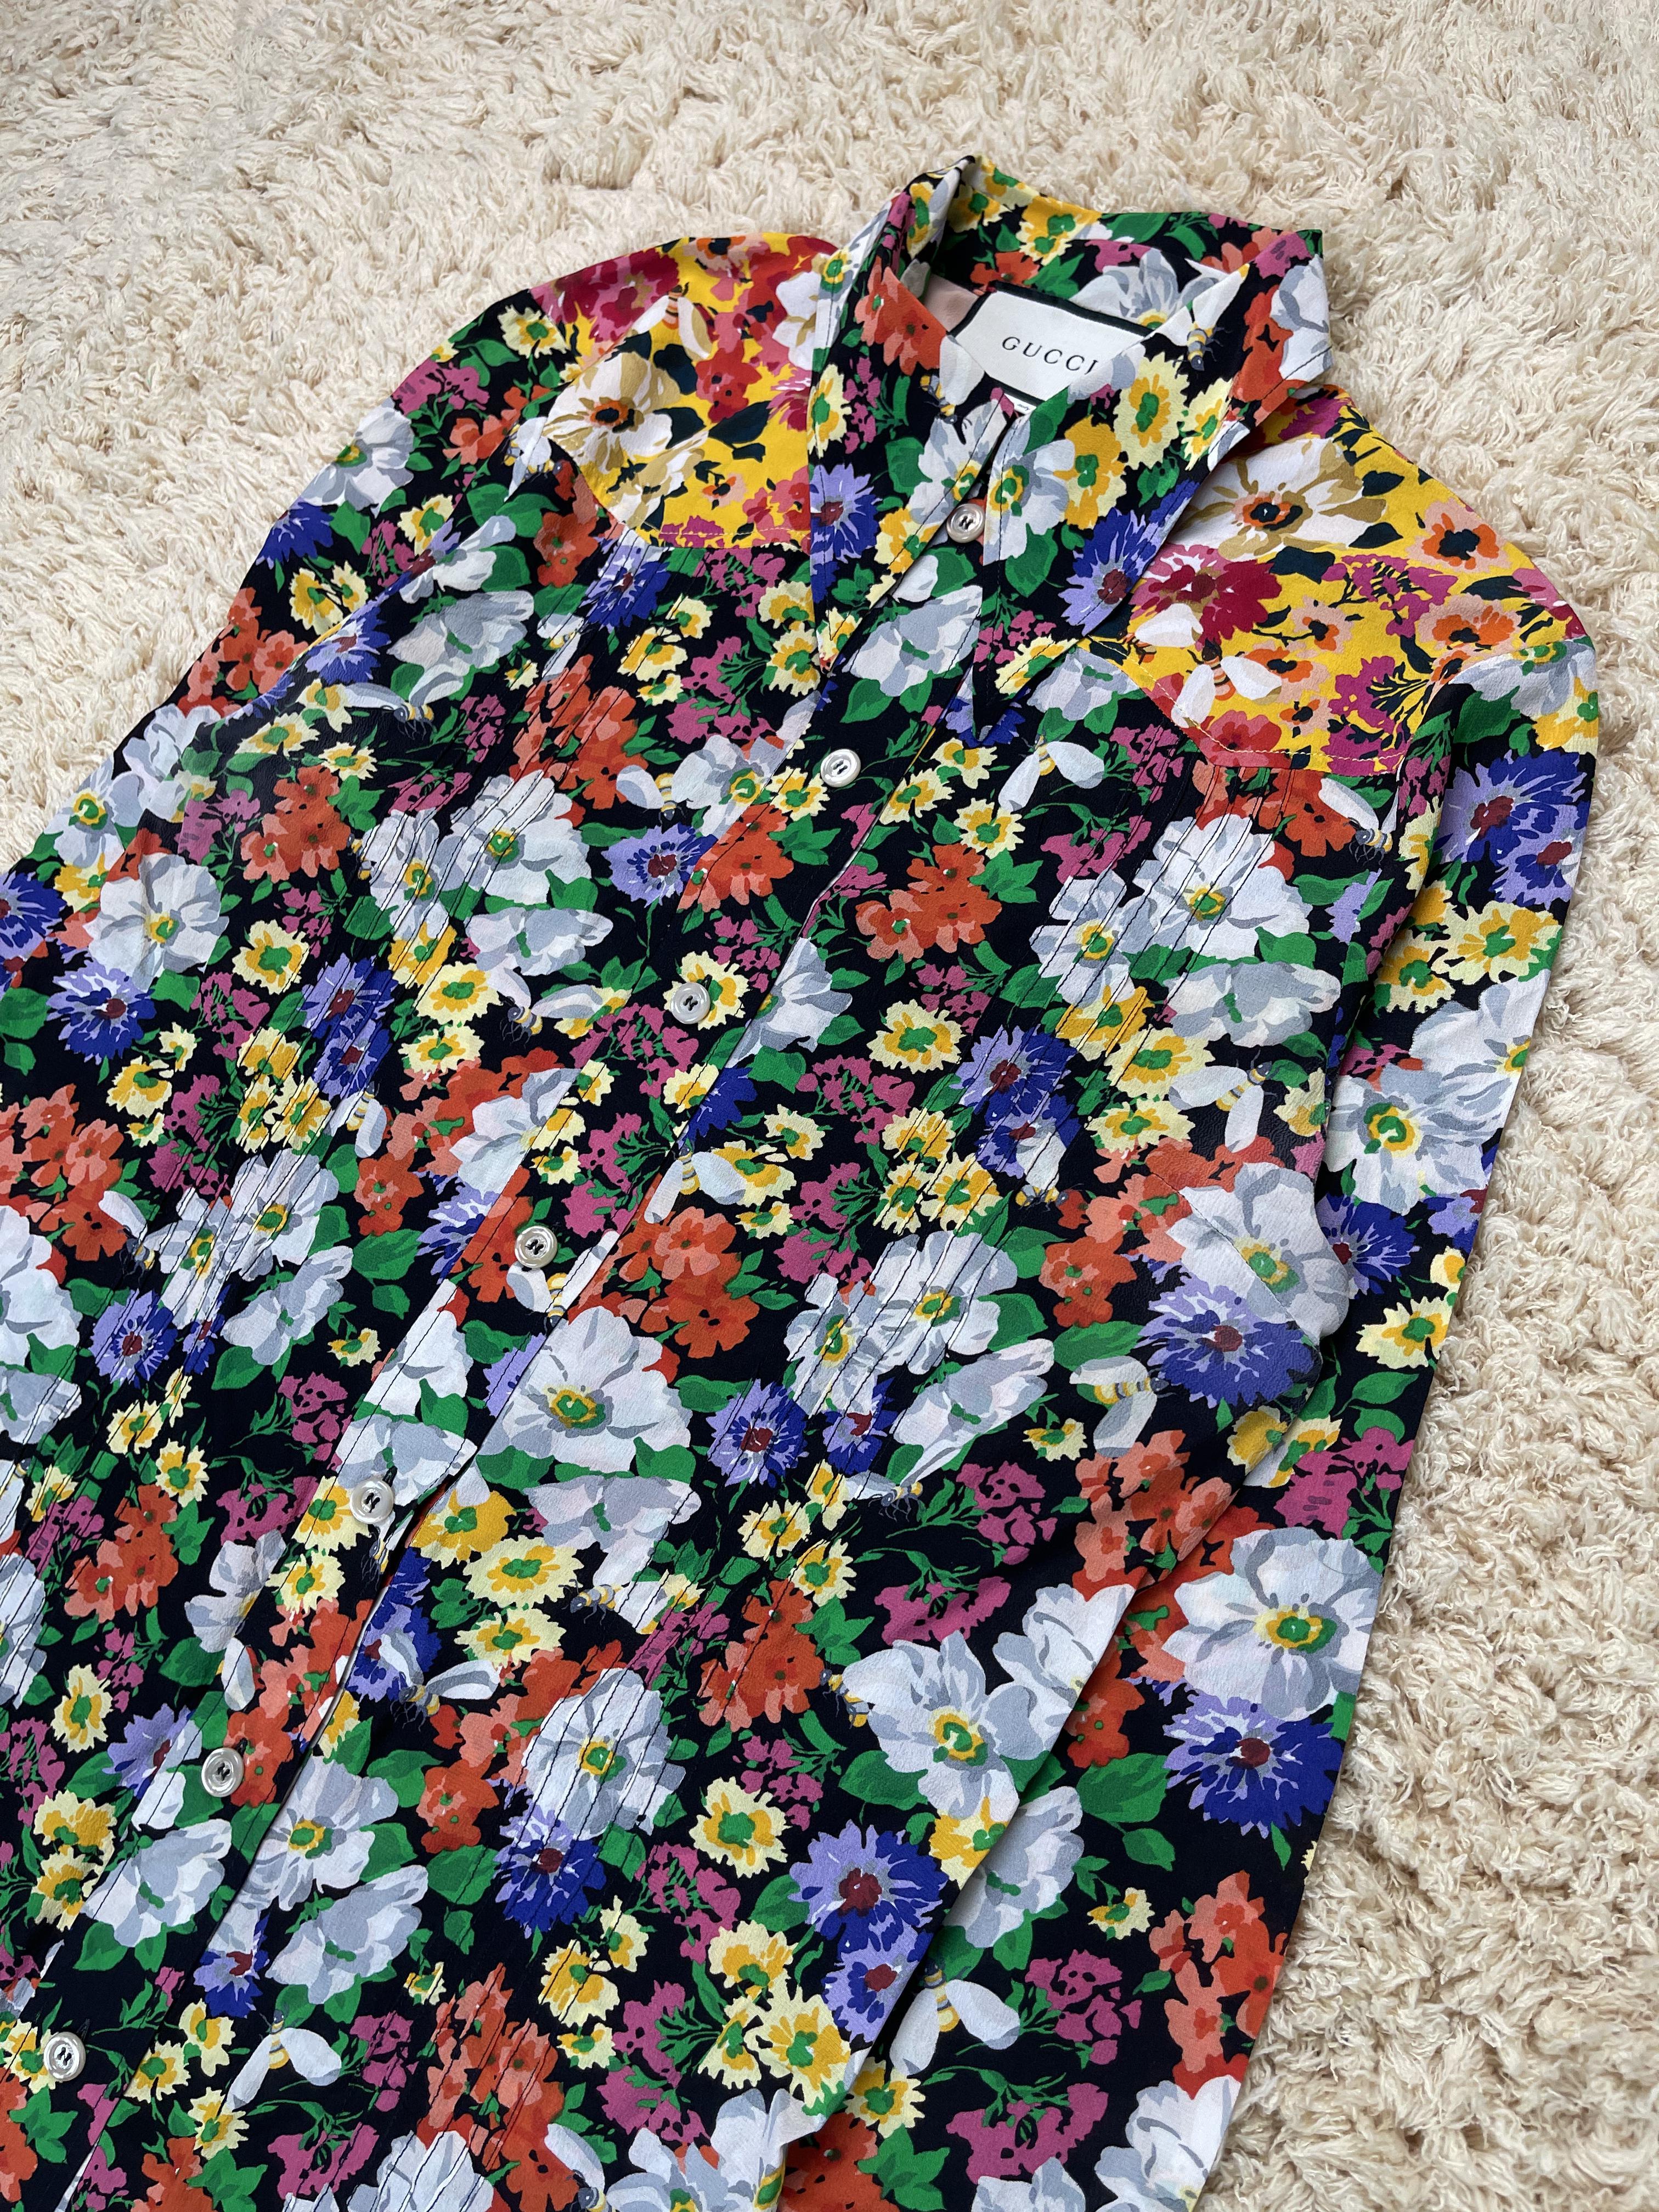 Geblümtes Gucci Hemd, das Hemd wurde ursprünglich für die Damenmode von Alessandro Michelle entworfen, die Saison ist etwa 2017 - 2018 wie auf dem Washtag gezeigt.

Zustand: 8/10. In relativ gutem Zustand, ohne kleinere Mängel.

Größe: Nicht